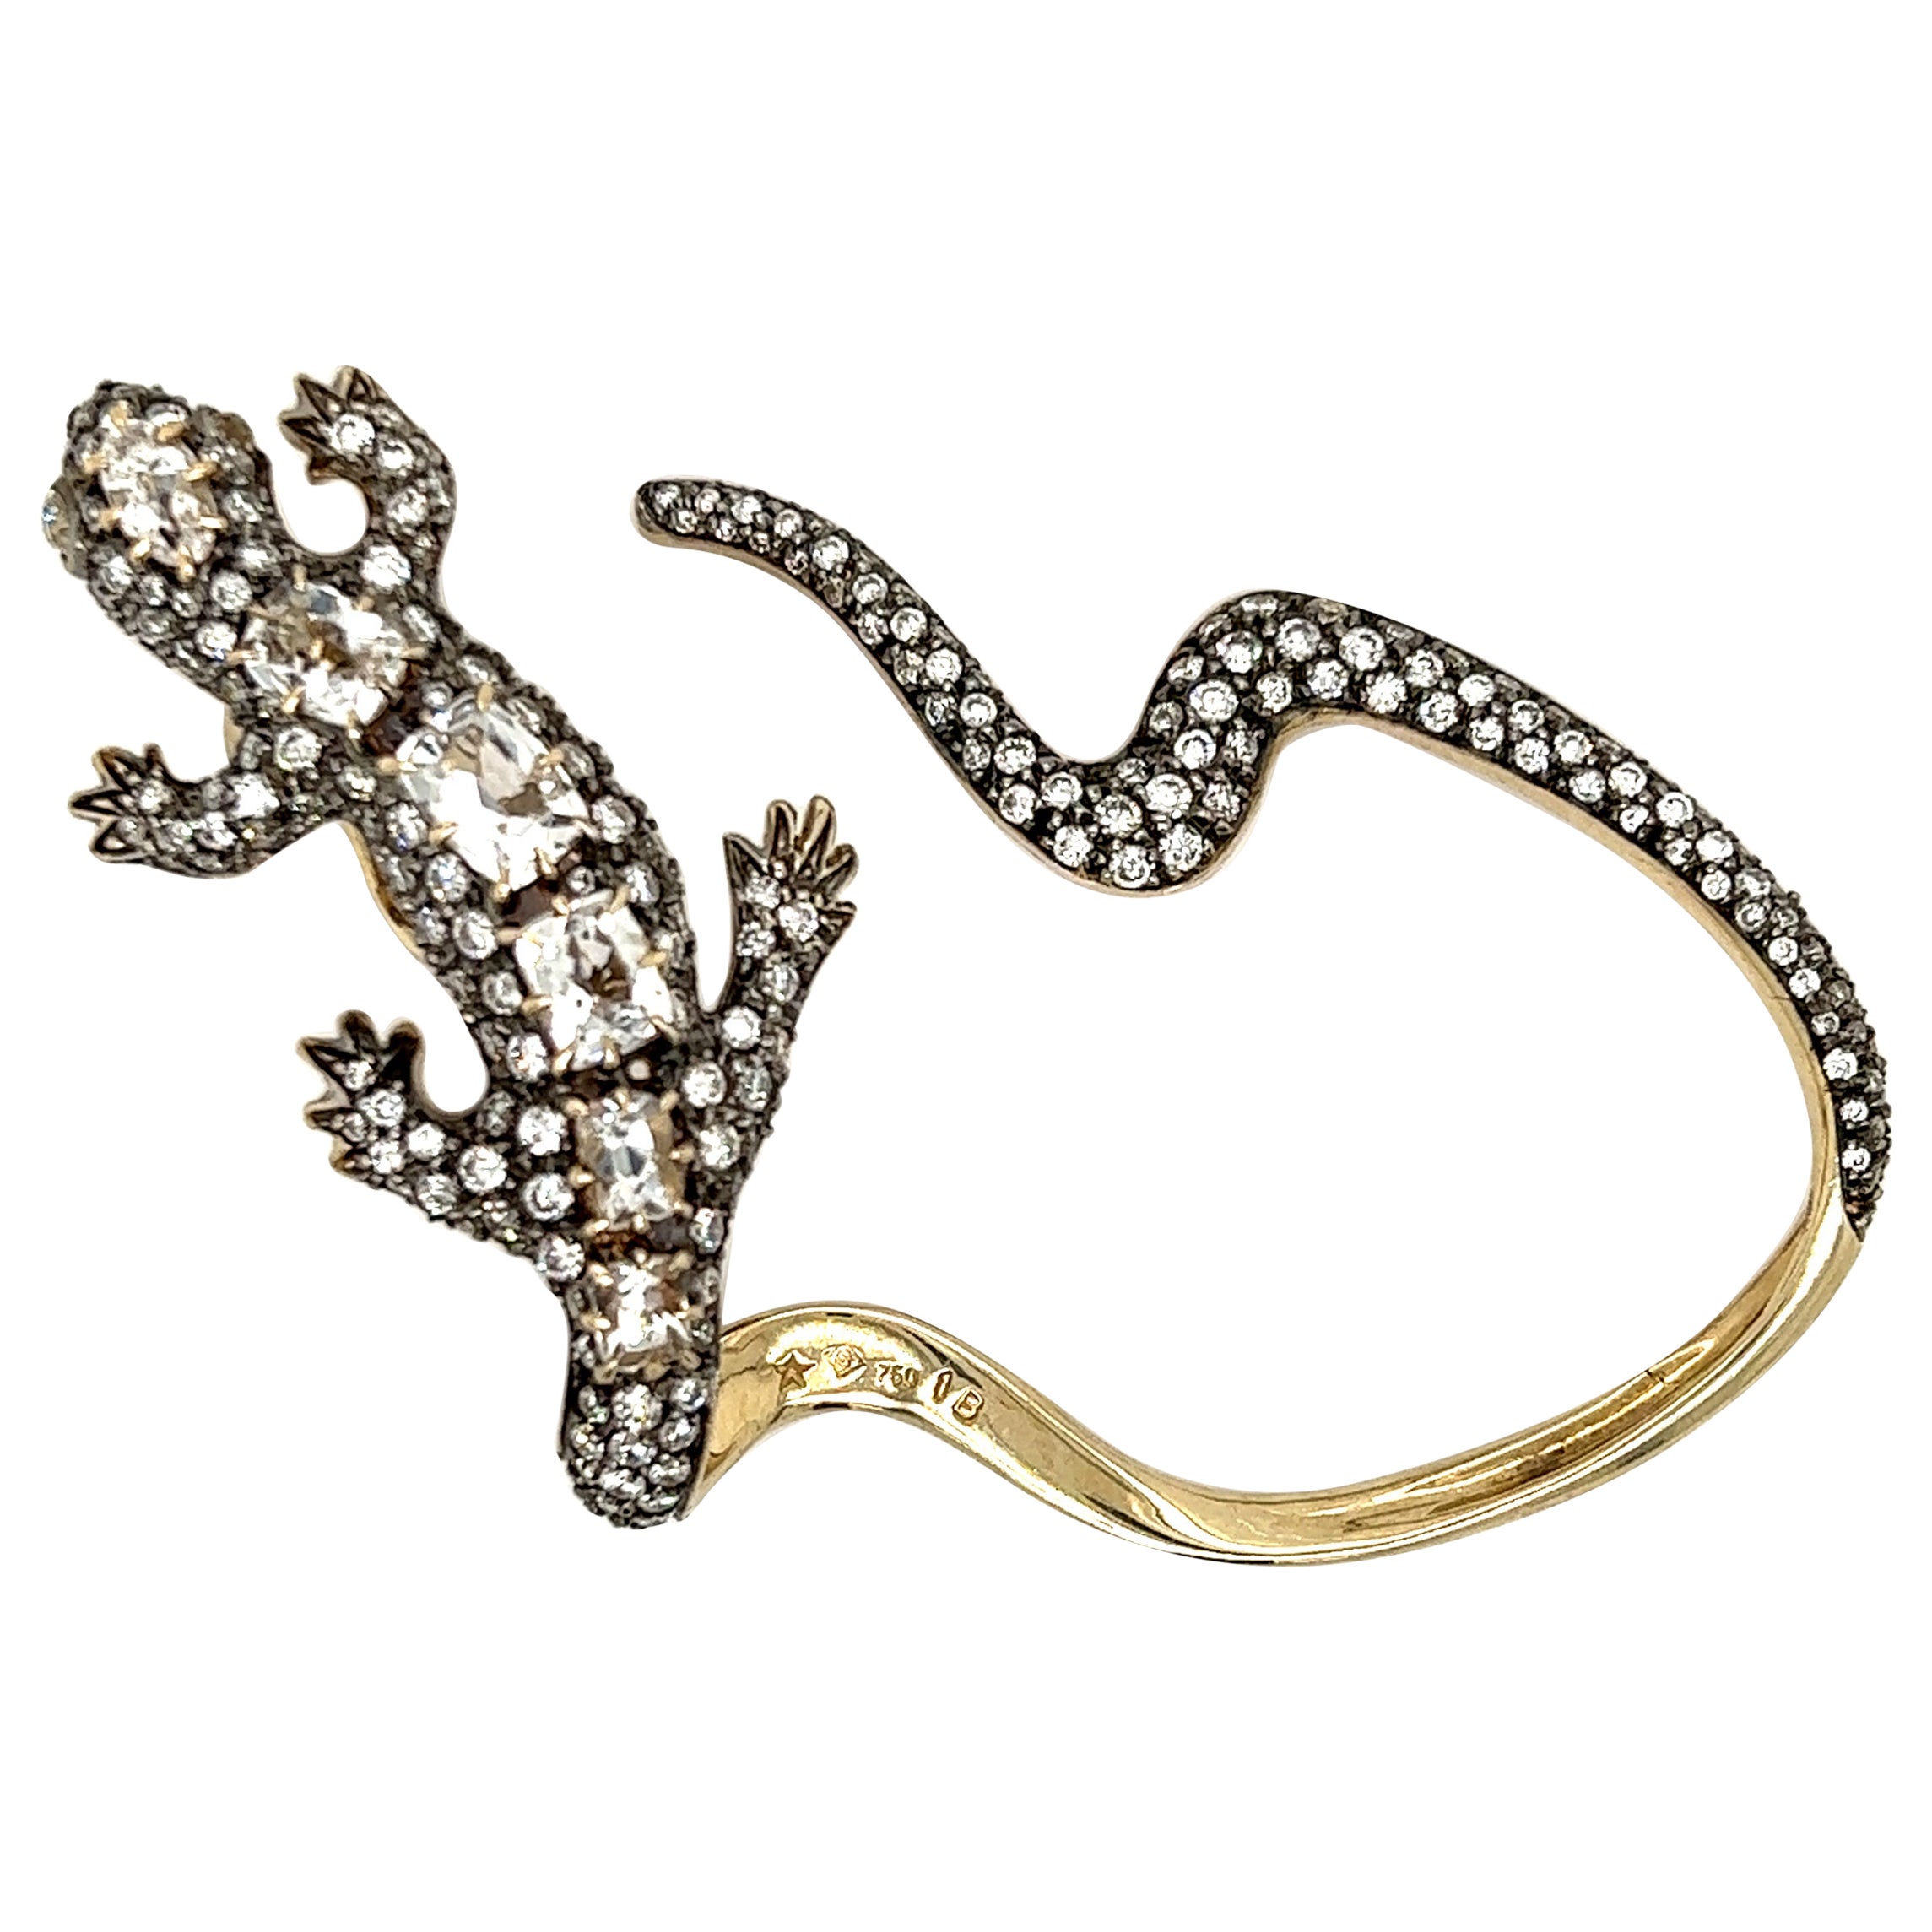 H. Stern Salamander-Ohr Manschette aus Roségold mit Diamanten und Morganit-Edelsteinen 18k